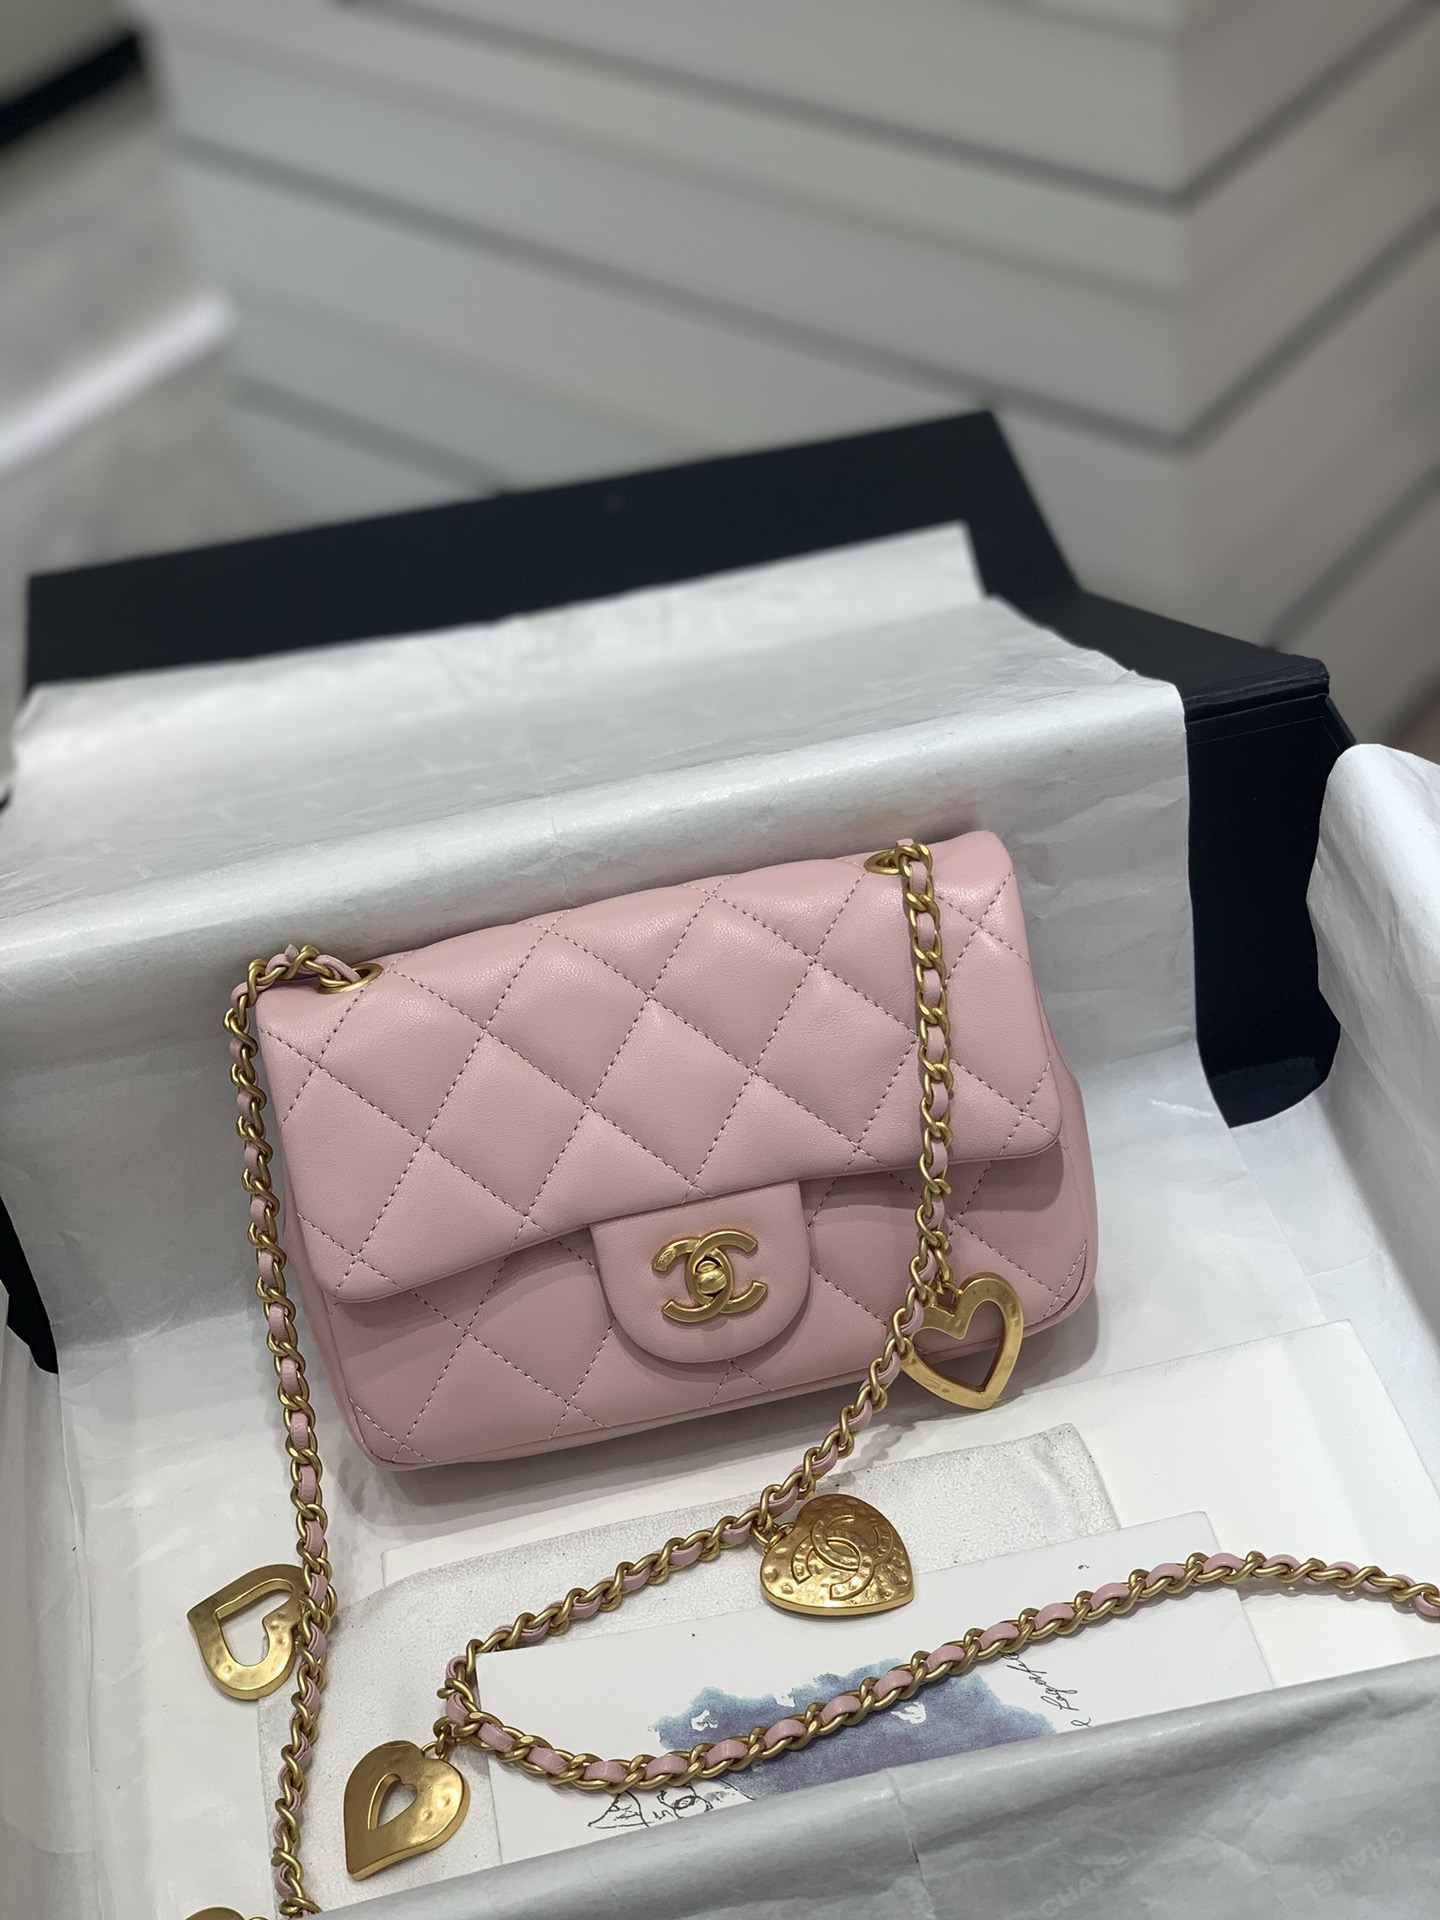 Túi xách Chanel Bag siêu cấp nắp gập mini da cừu màu trắng size 17 cm   1786  Túi xách cao cấp những mẫu túi siêu cấp like authentic cực đẹp